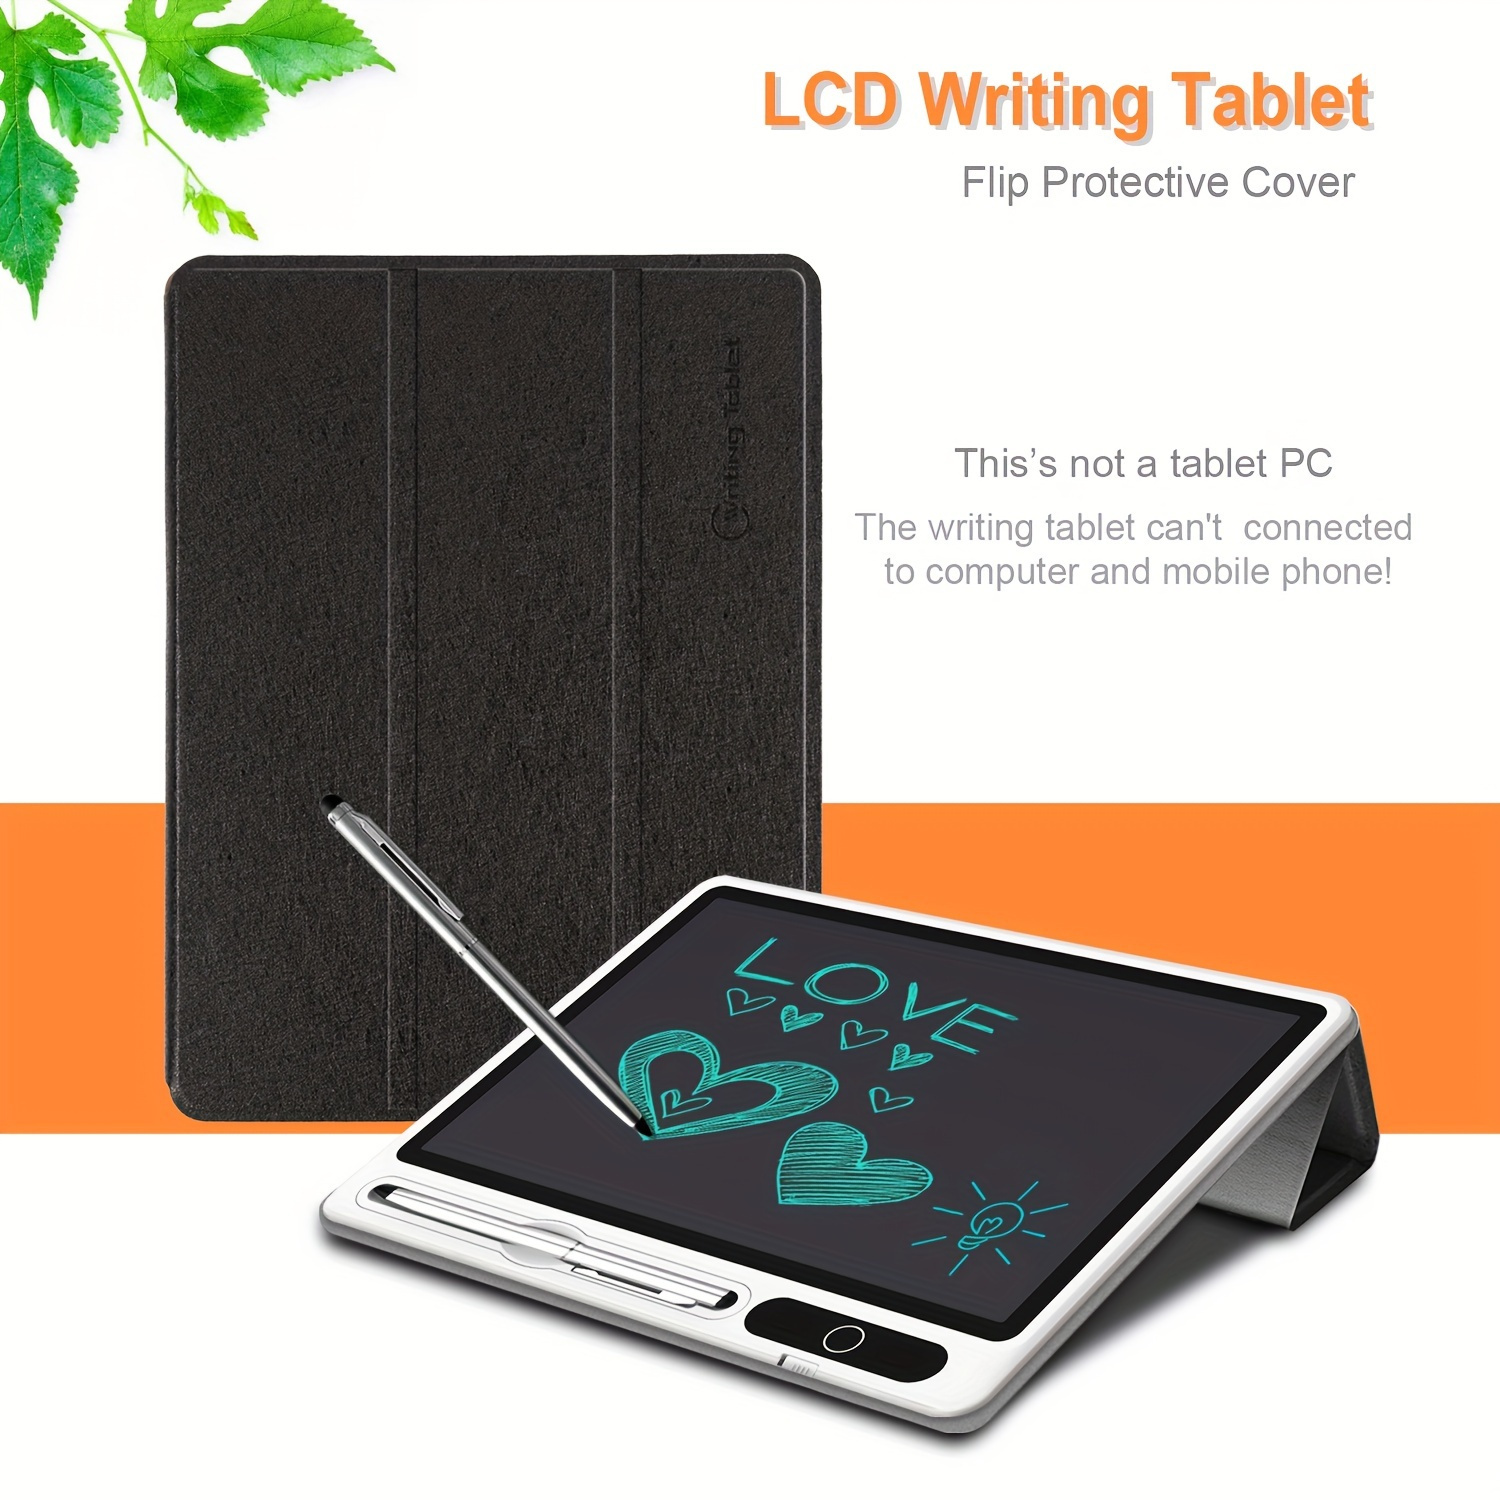 Tablet Tablet Android 12 OS de 10.1 pulgadas, tabletas 2 en 1 con teclado,  mouse, funda, lápiz capacitivo, película templada, 32 GB ROM+2 GB RAM